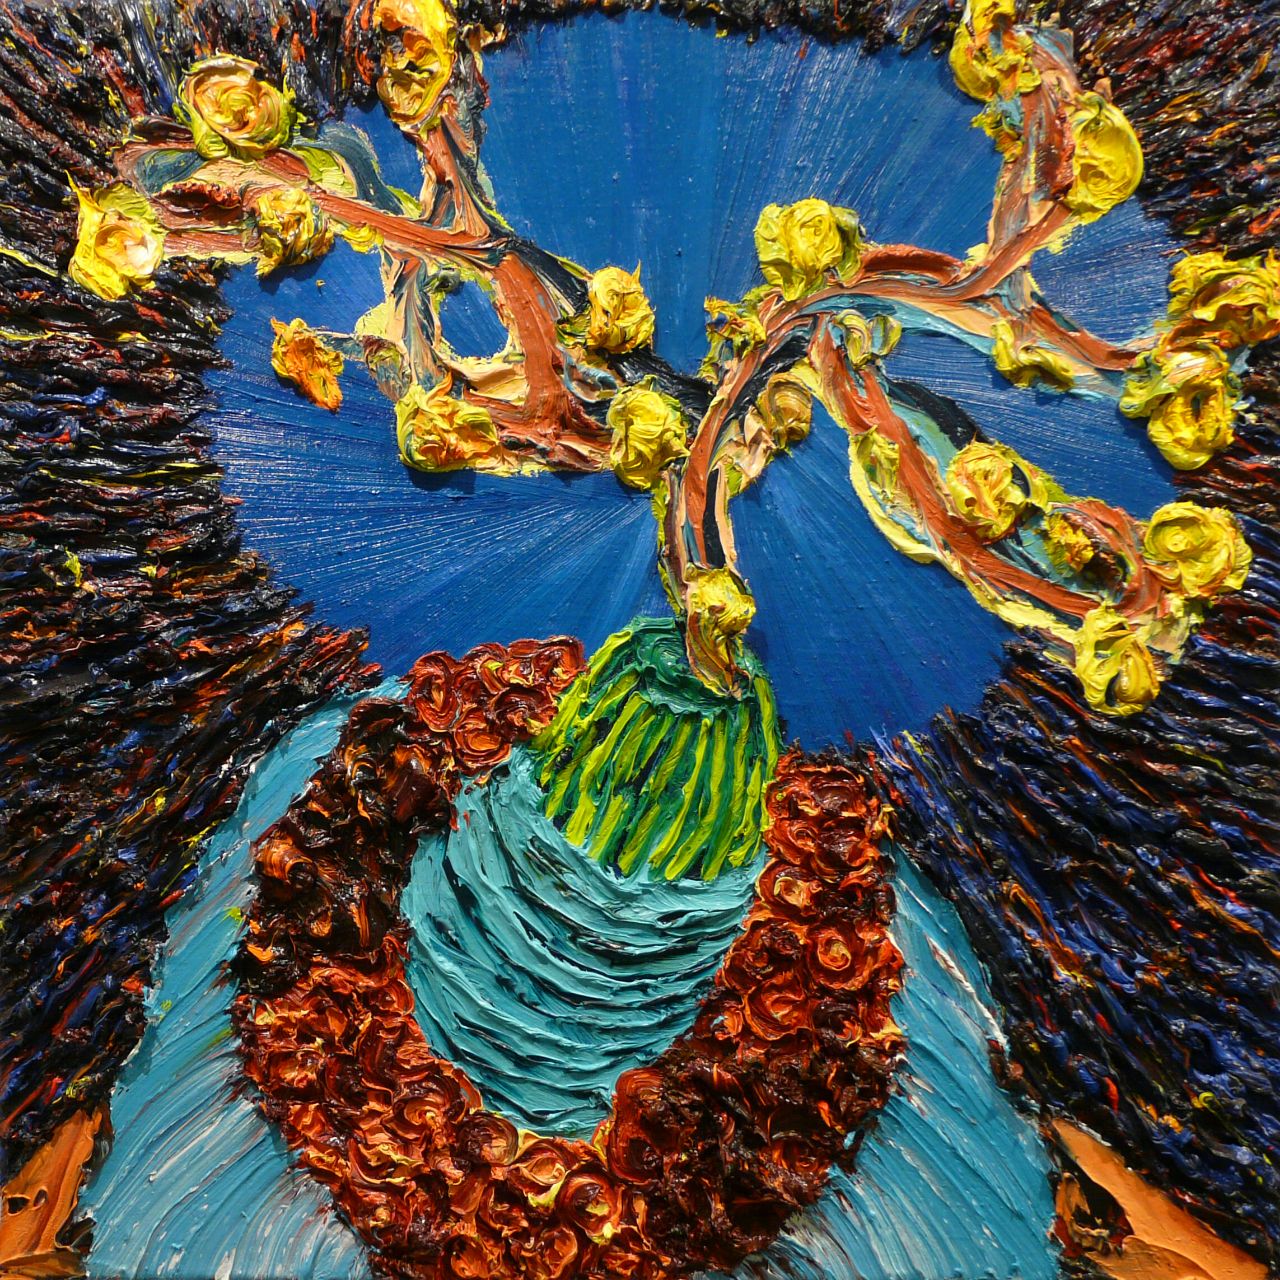 Harry Meyer, STILLES LEBEN Blumen, 2013, Öl auf Leinwand, 70 cm x 70 cm